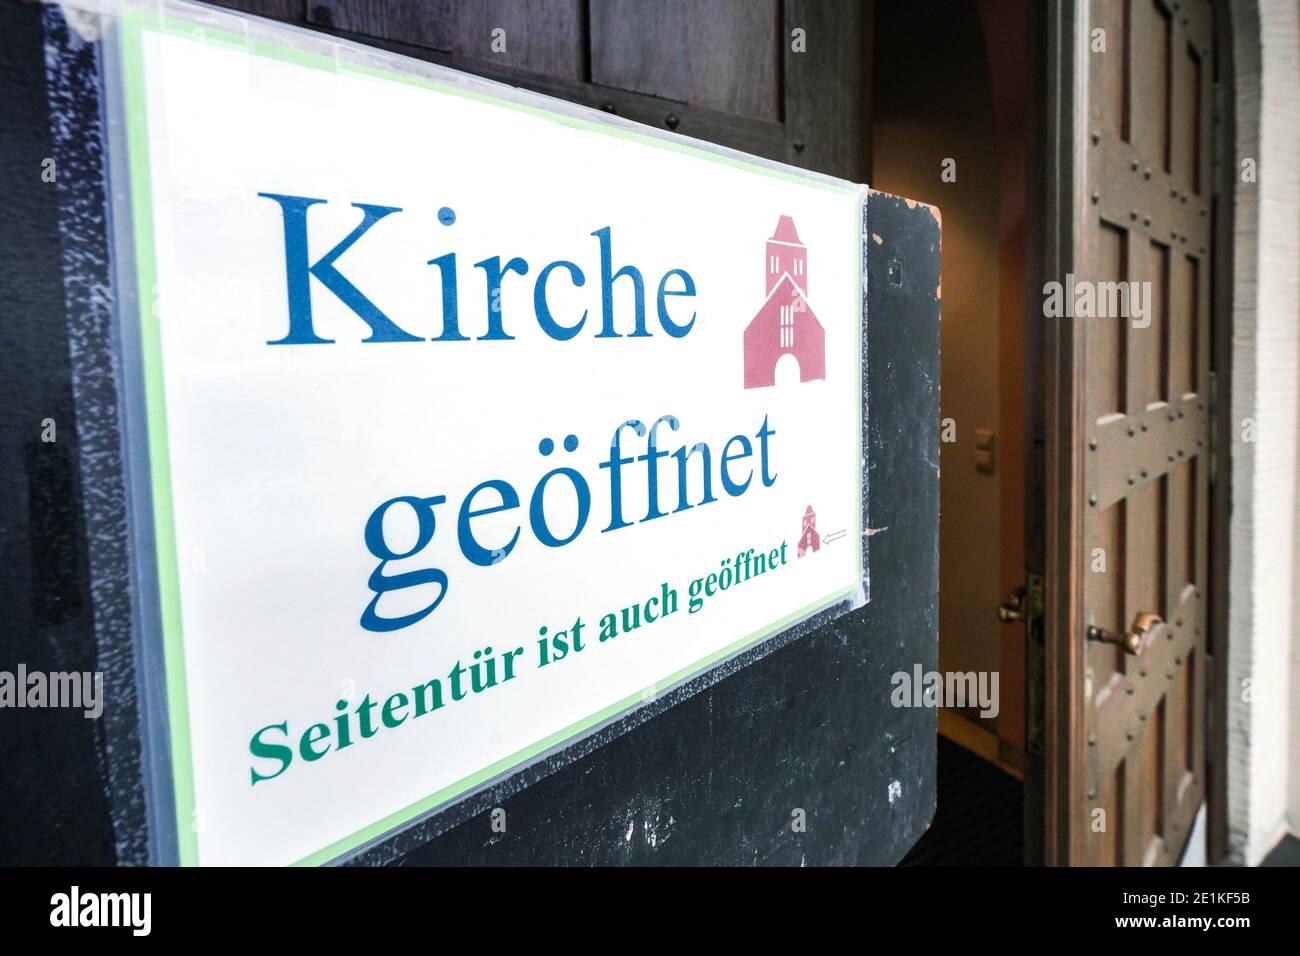 Schir an der Tür der katholischen Franziskus-Xaverius-Kirche en Dortmund weist darauf hin, dass die Kirche auch während der Maßnahmen zum Corona-Lockdown geöffnet ist. Foto de stock